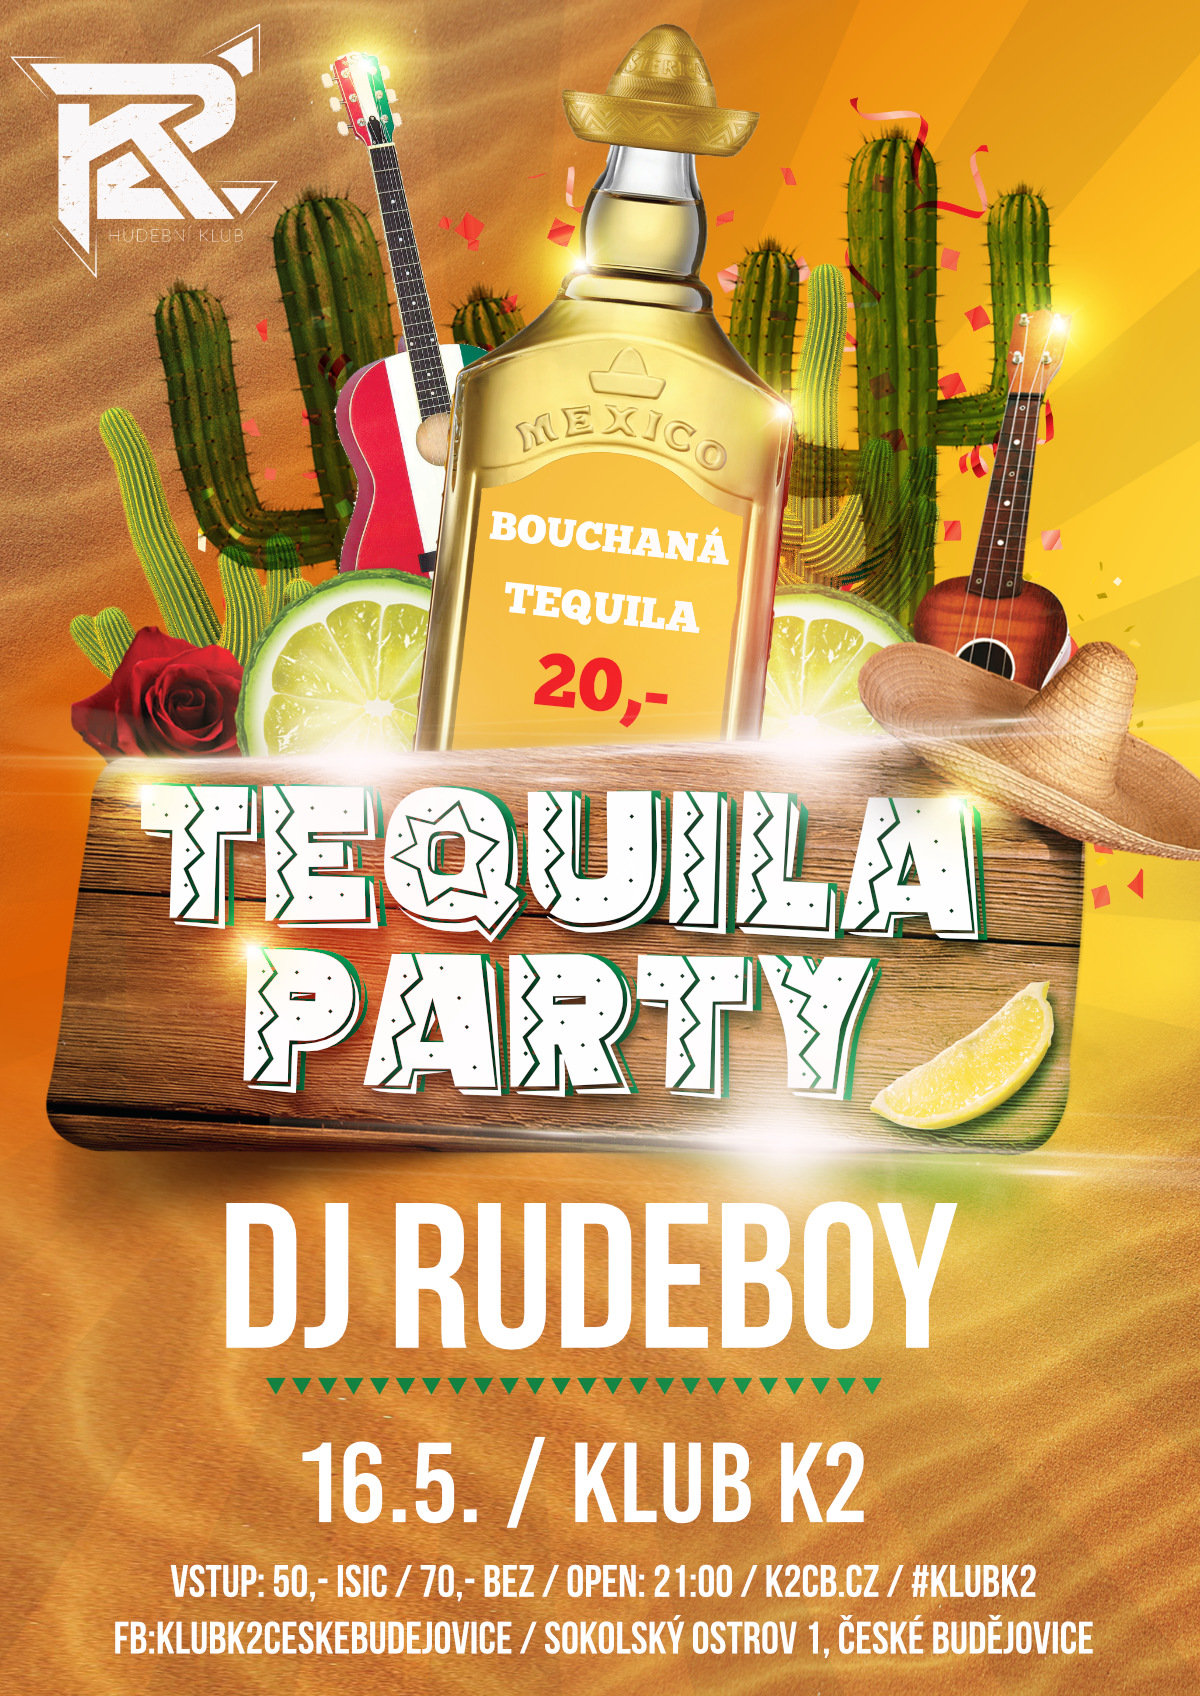 Tequila party - Dj RUDEBOY 16/5